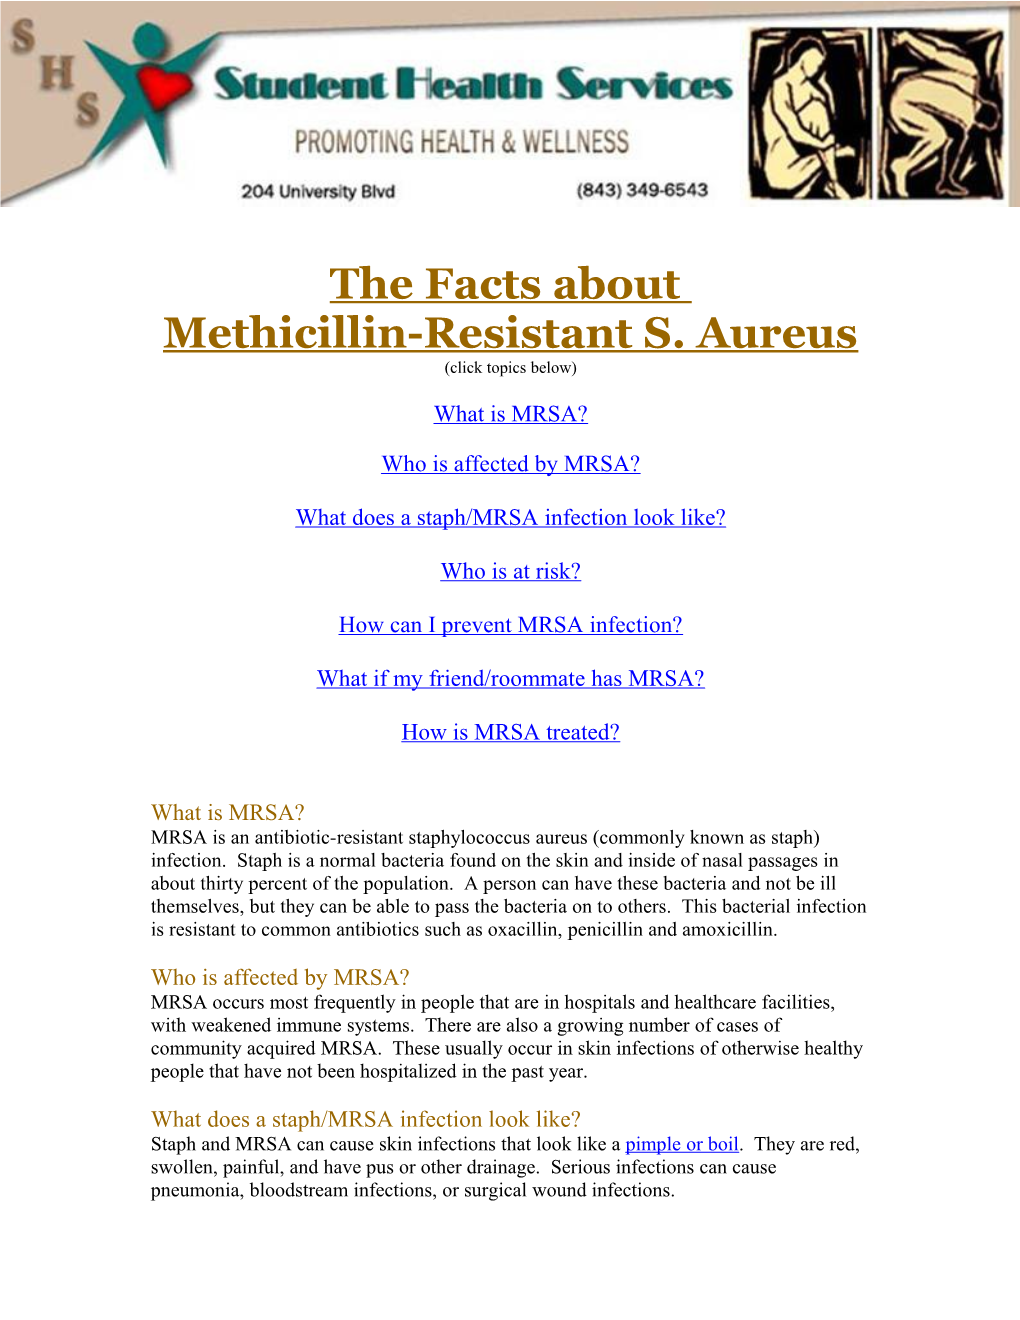 Methicillin-Resistant S. Aureus